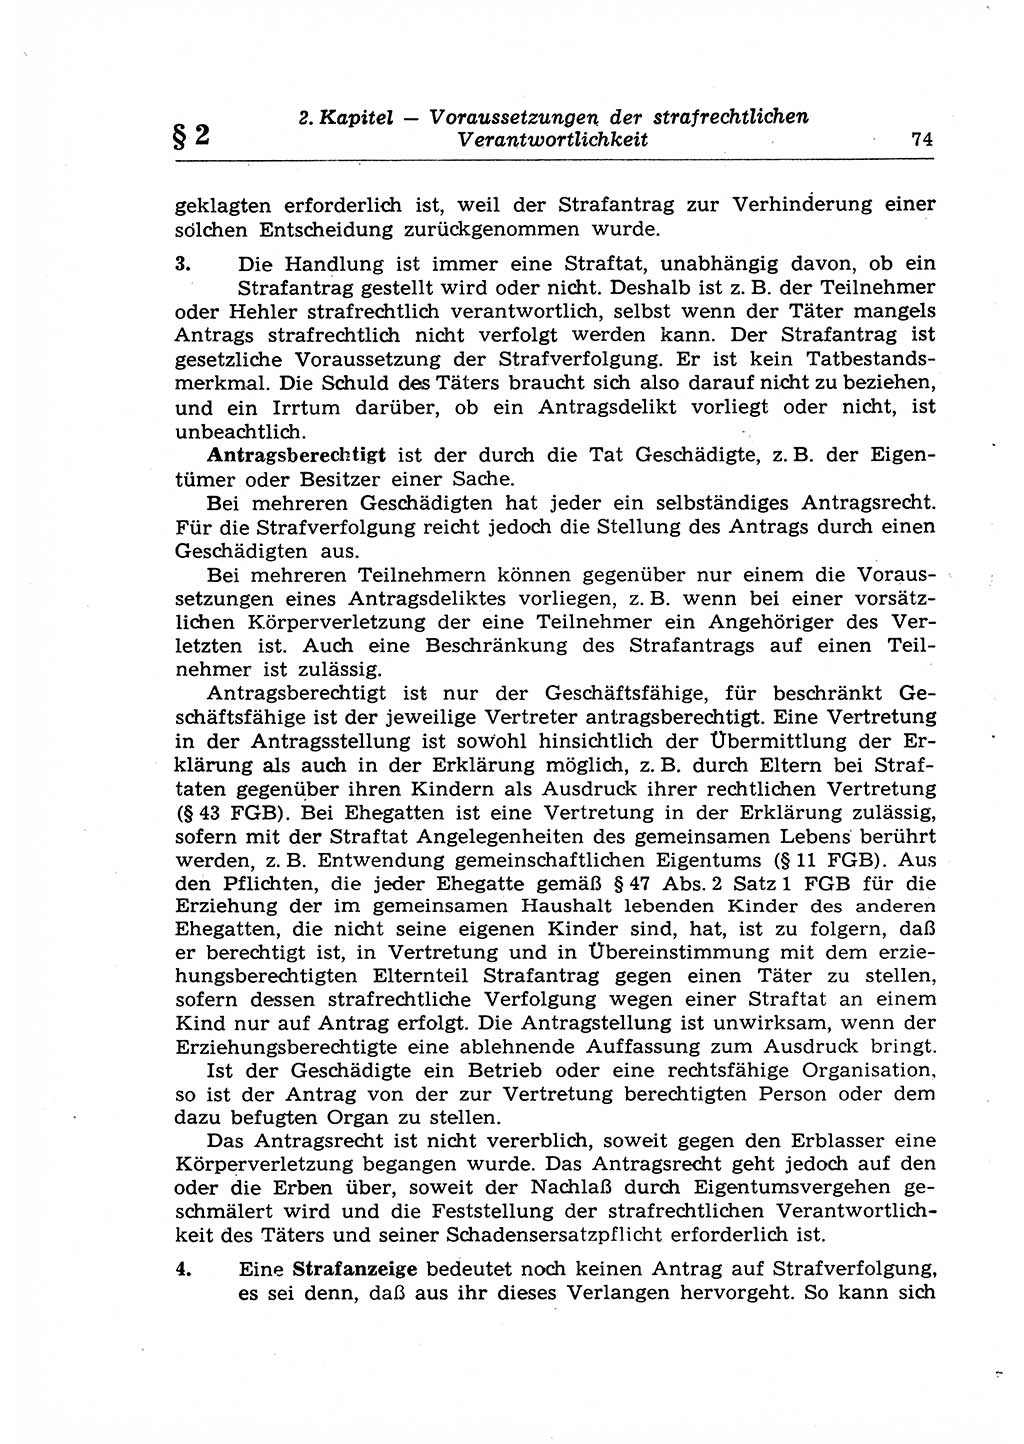 Strafrecht der Deutschen Demokratischen Republik (DDR), Lehrkommentar zum Strafgesetzbuch (StGB), Allgemeiner Teil 1969, Seite 74 (Strafr. DDR Lehrkomm. StGB AT 1969, S. 74)